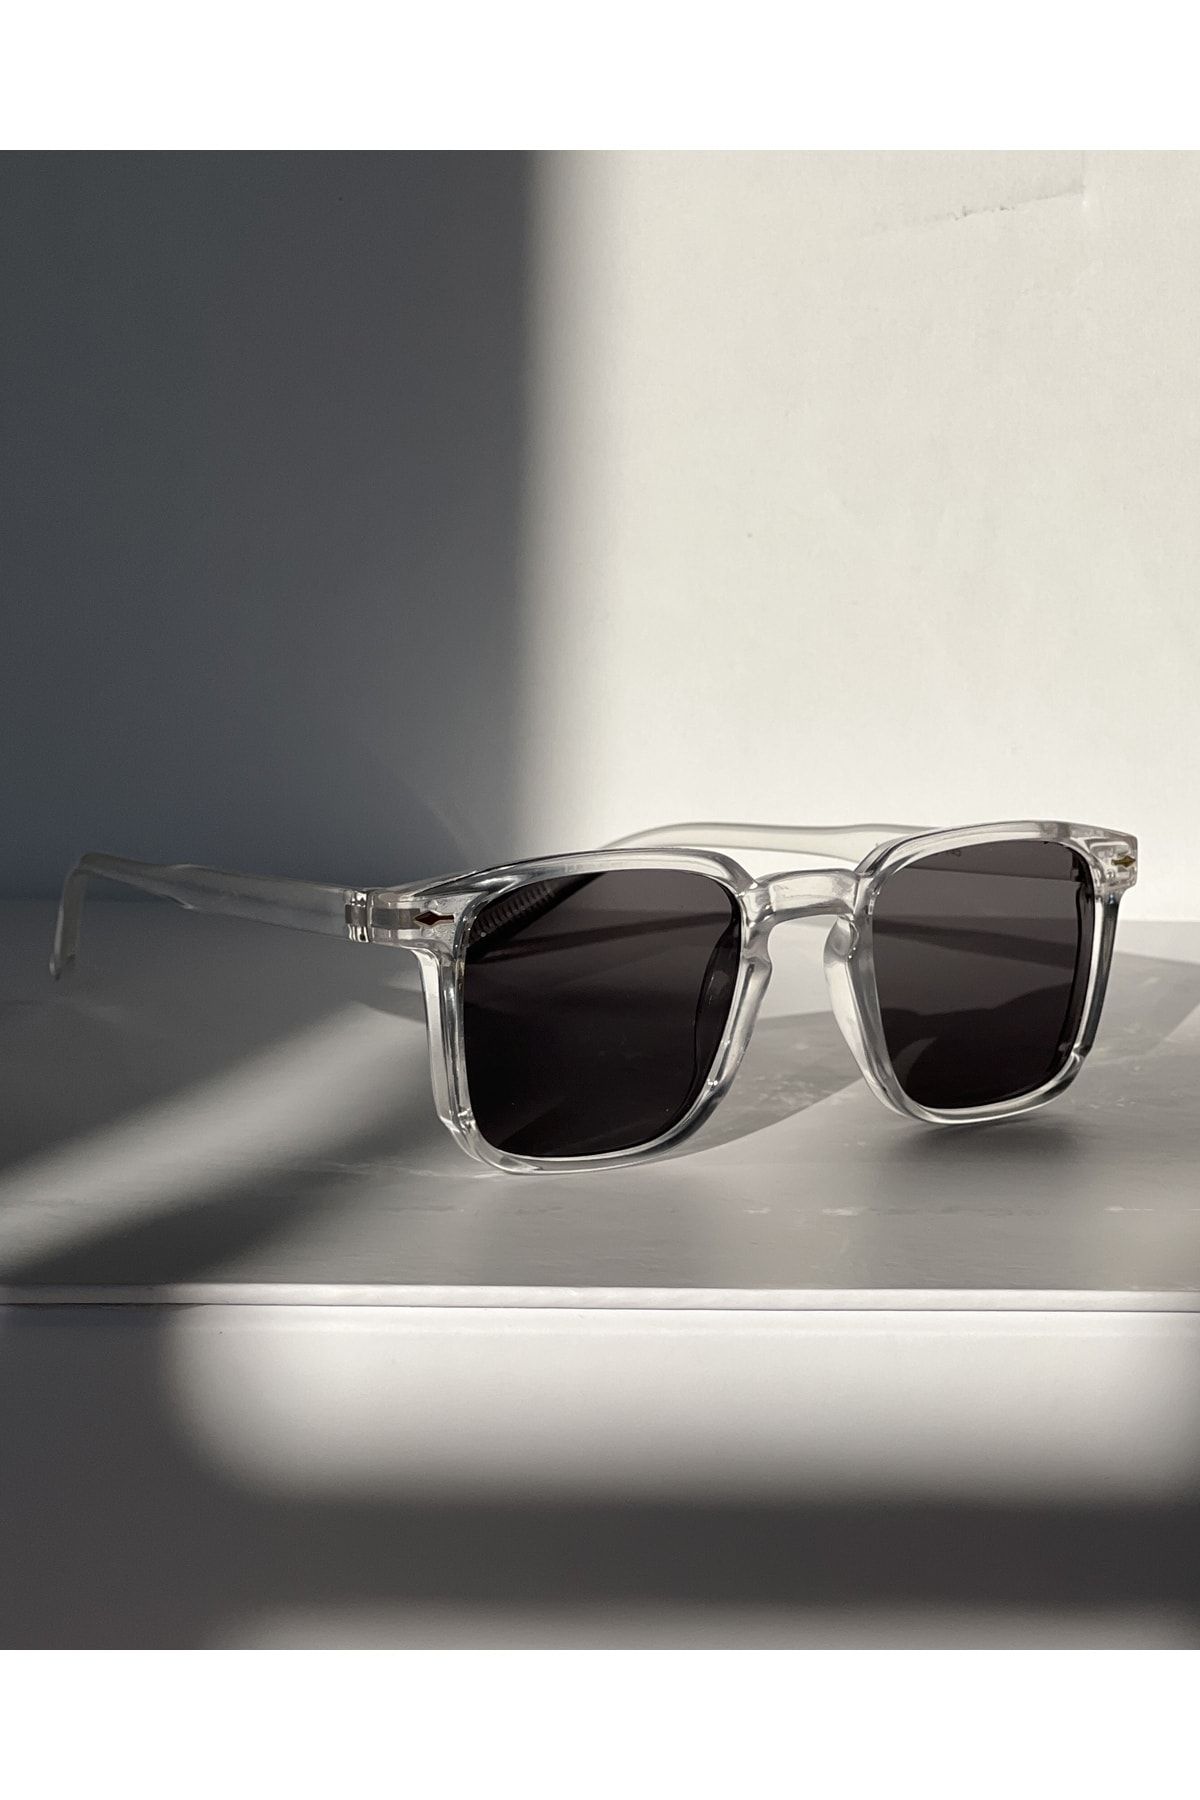 RiRi Store Olla Güneş Gözlüğü UV400 Korumalı Kadın Gözlüğü